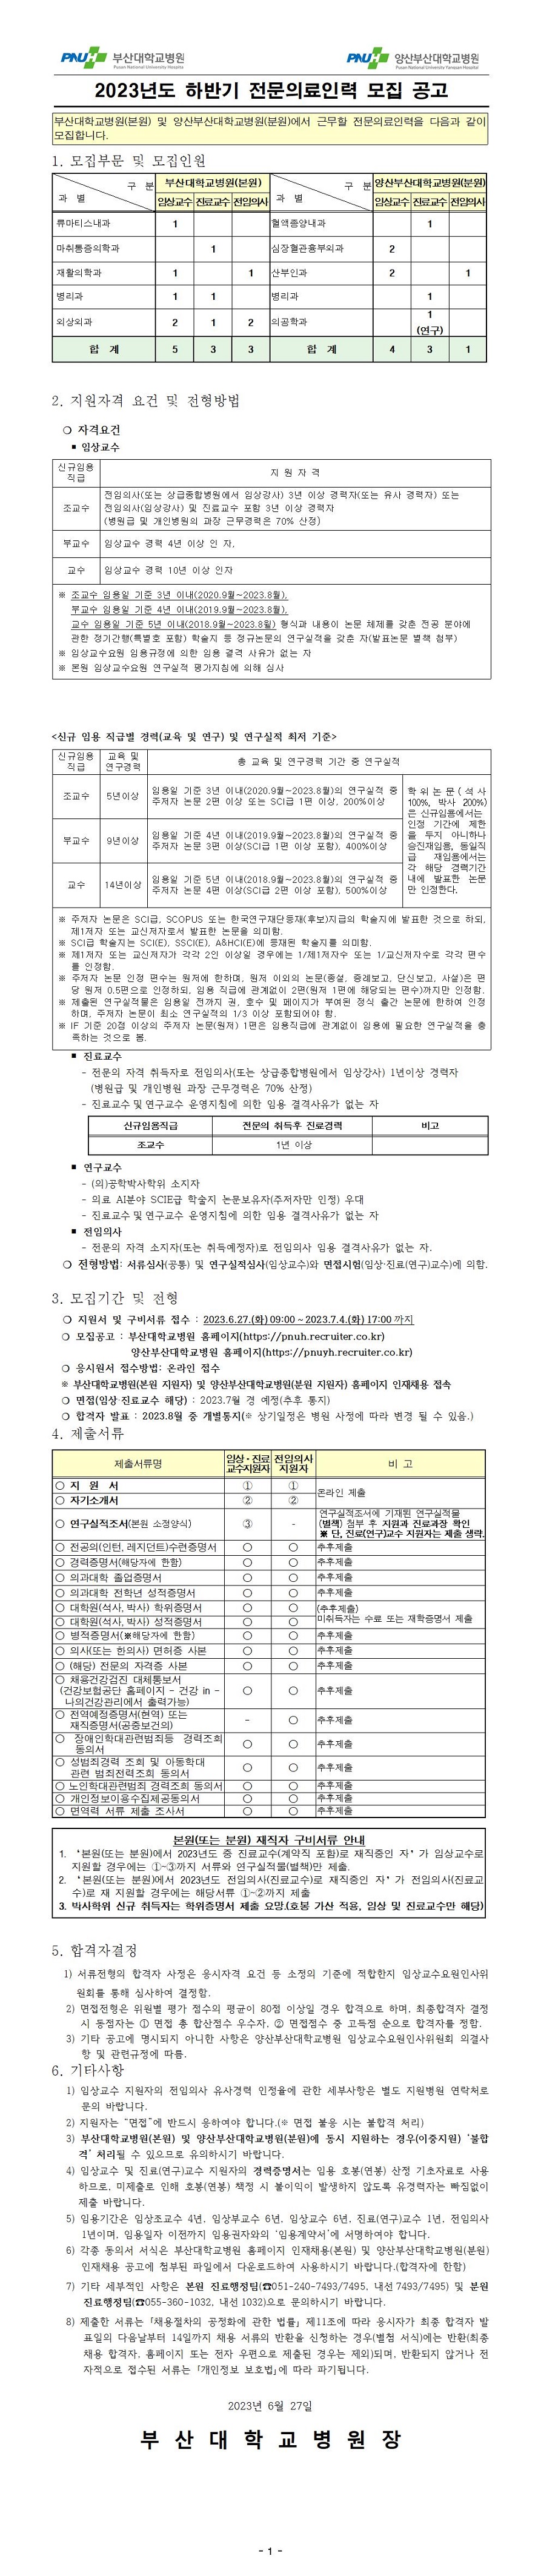 부산대학교병원 2023년도 하반기 전문의료인력 모집 공고~23년7월4일